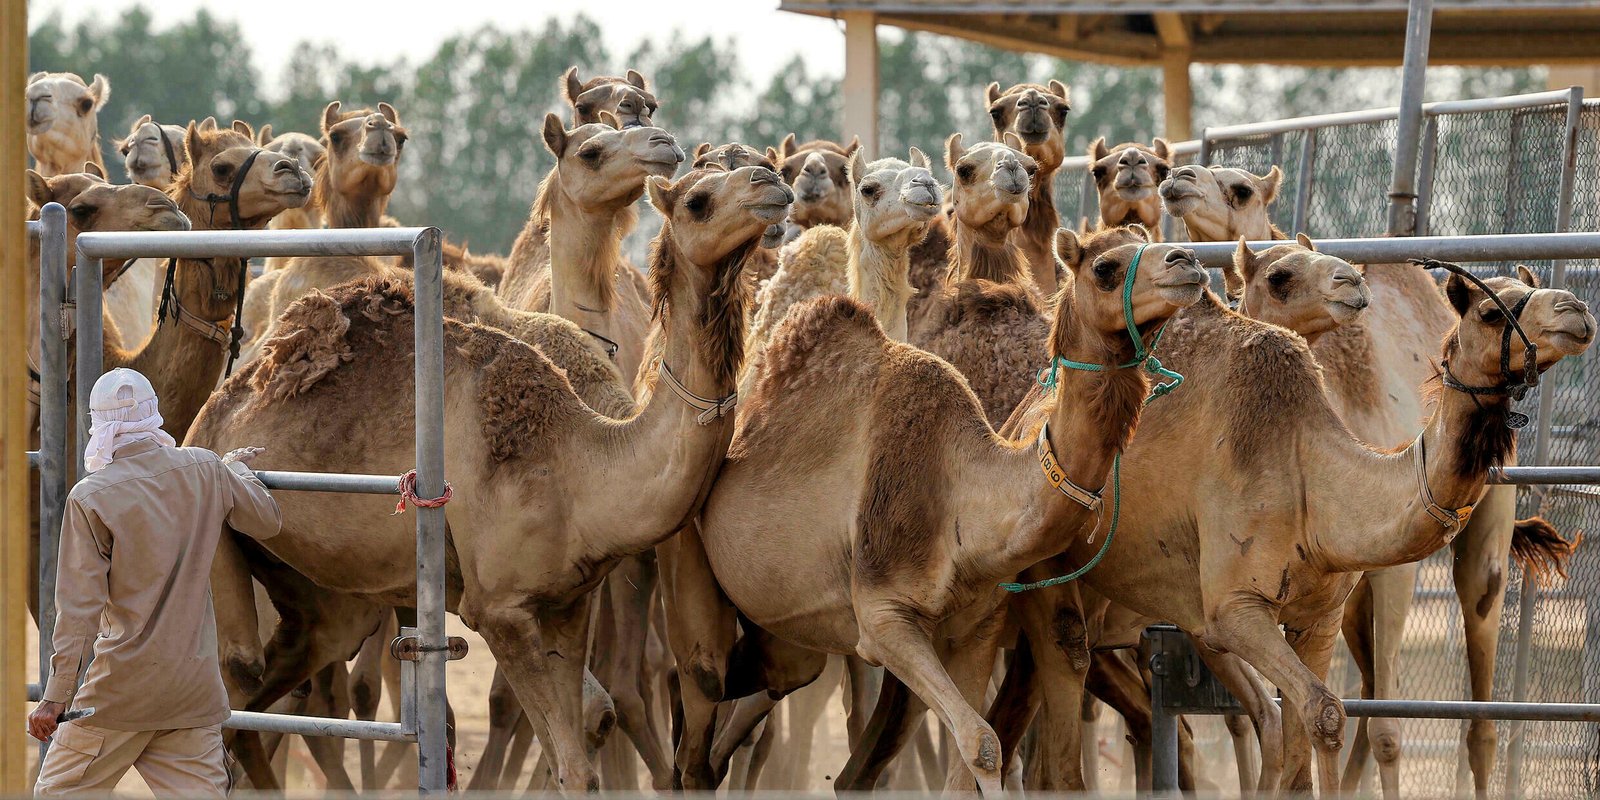 En Dubái se clonan camellos para ganar carreras y concursos de belleza